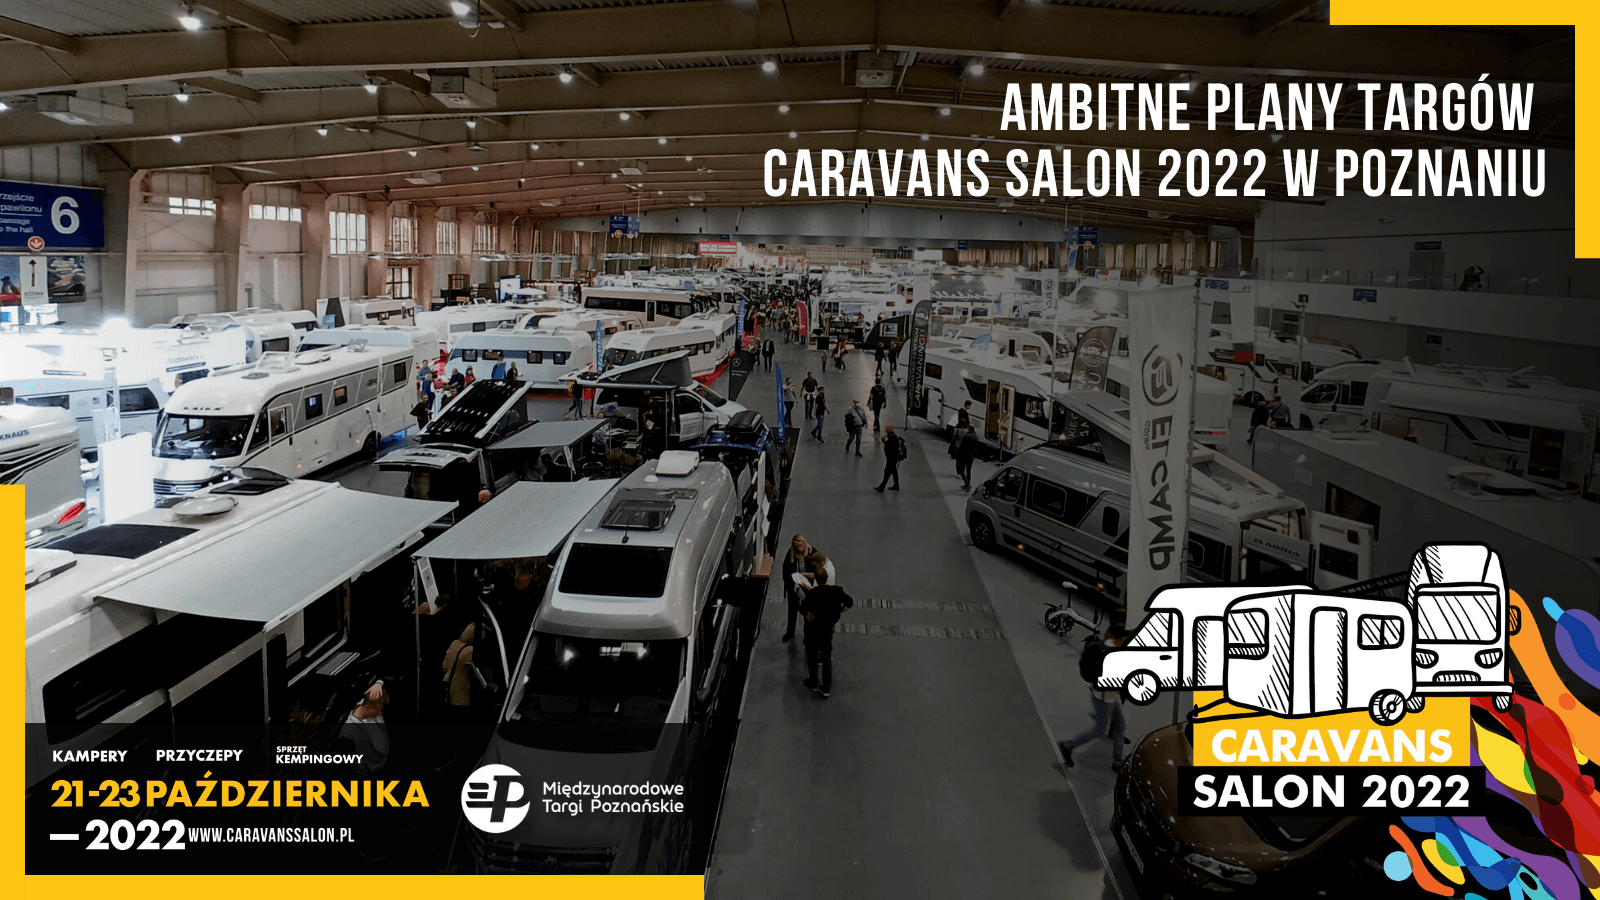 Ambitious plans for Caravans Salon Poland 2022 in Poznań – image 2